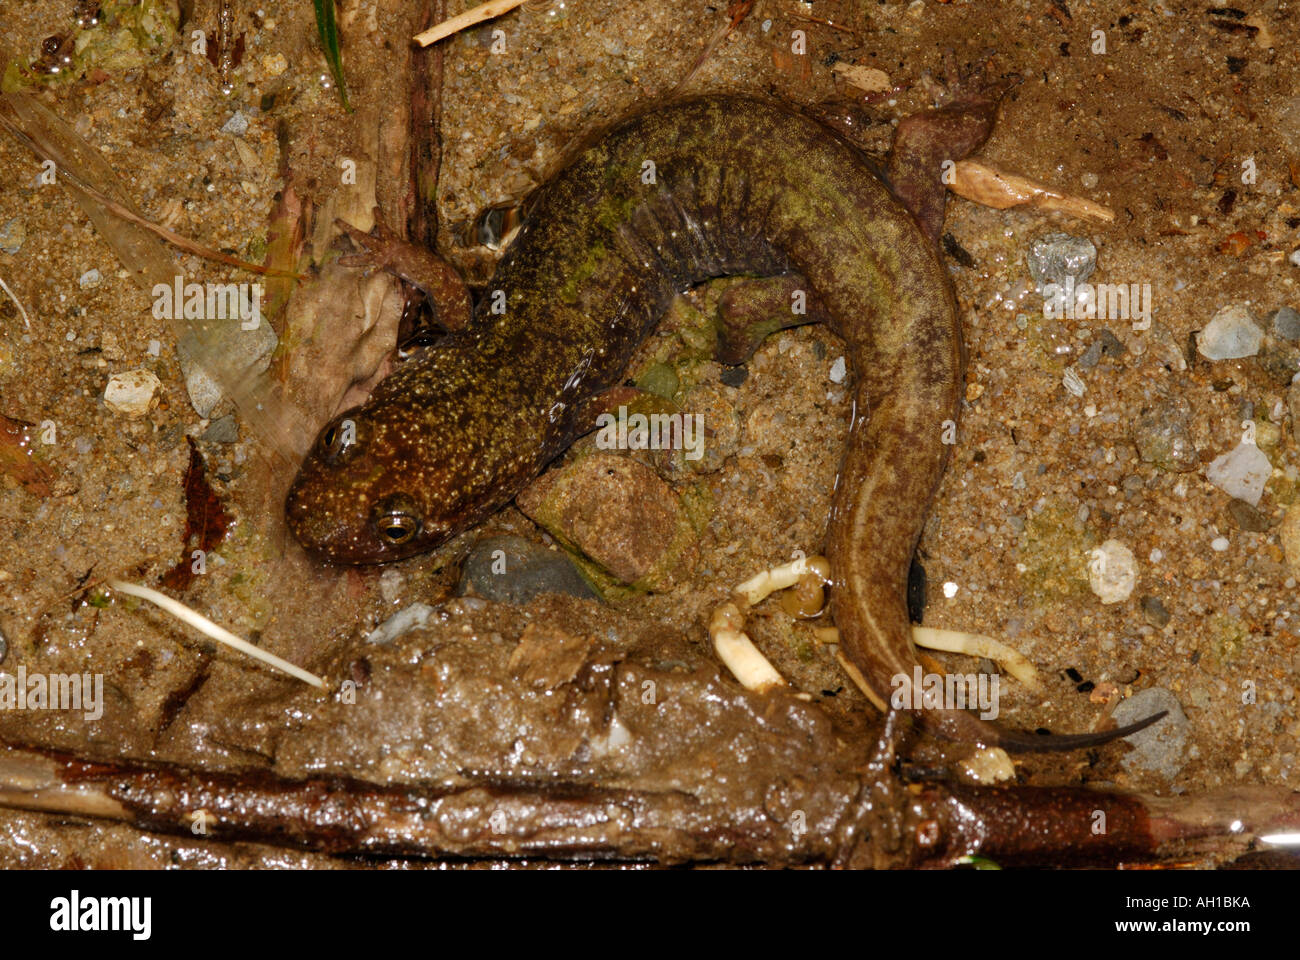 Desmognathus quadramaculatus Blackbelly, Salamandre, dans le ruisseau, parc national des Great Smoky Mountains Banque D'Images